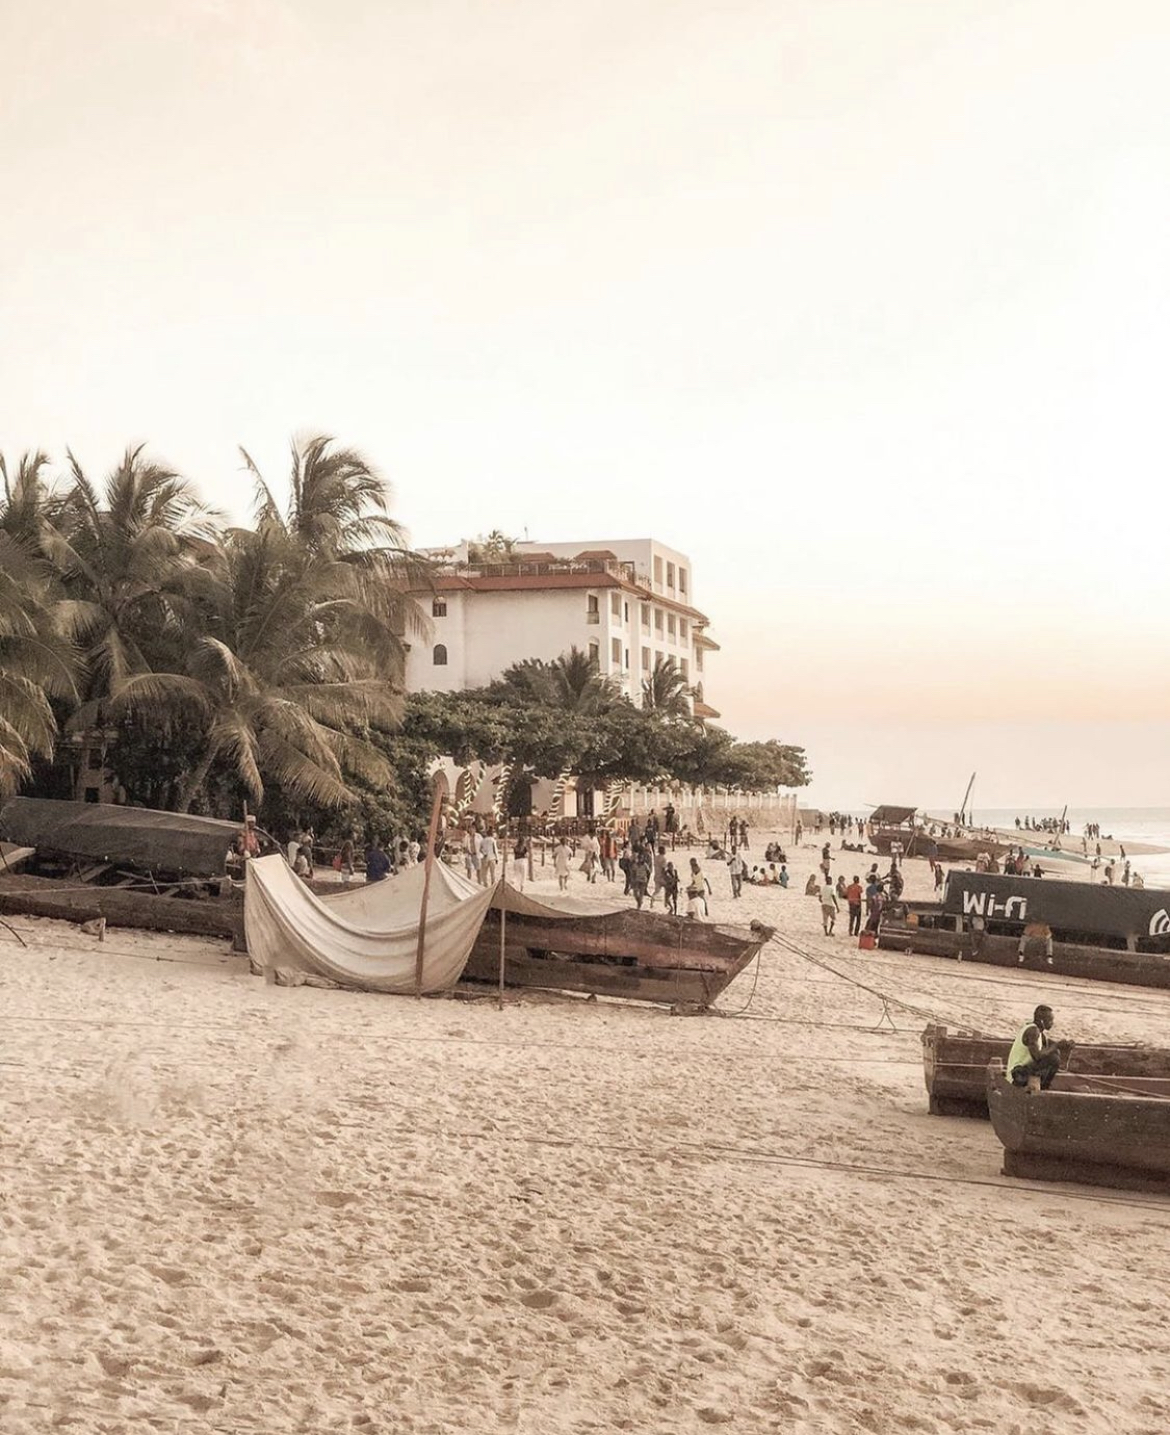 Zanzibar travel guide - Forodhani - Stone Town beach